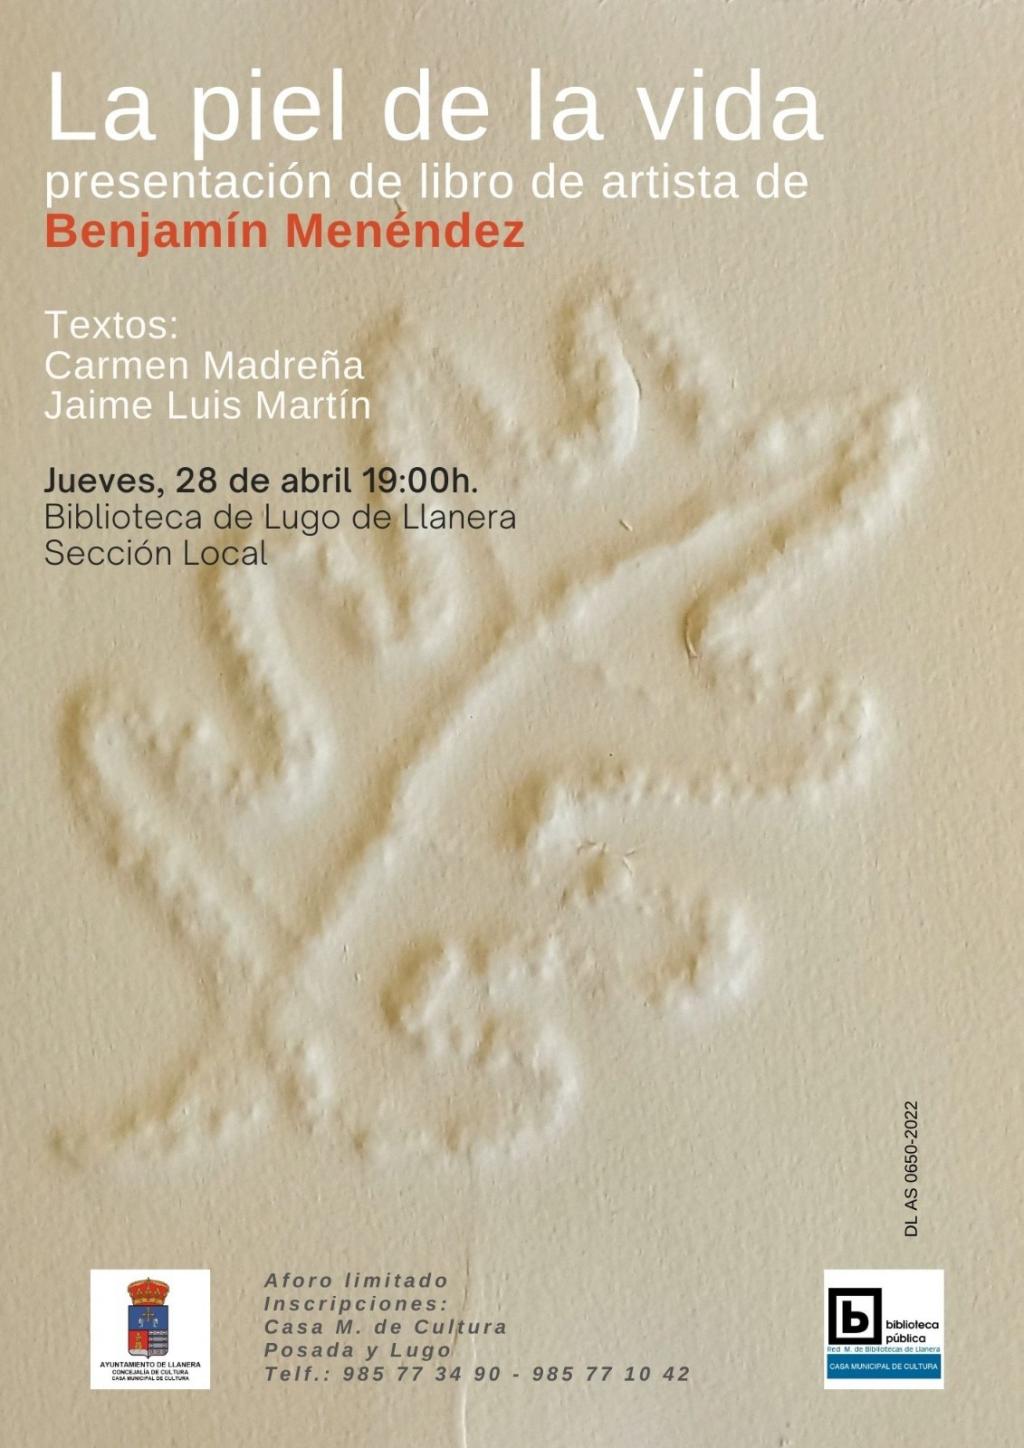 El Tapin - Benjamín Menéndez presentará su libro “La piel de la vida” el jueves 28 de abril a las 19 horas en la Biblioteca de Lugo